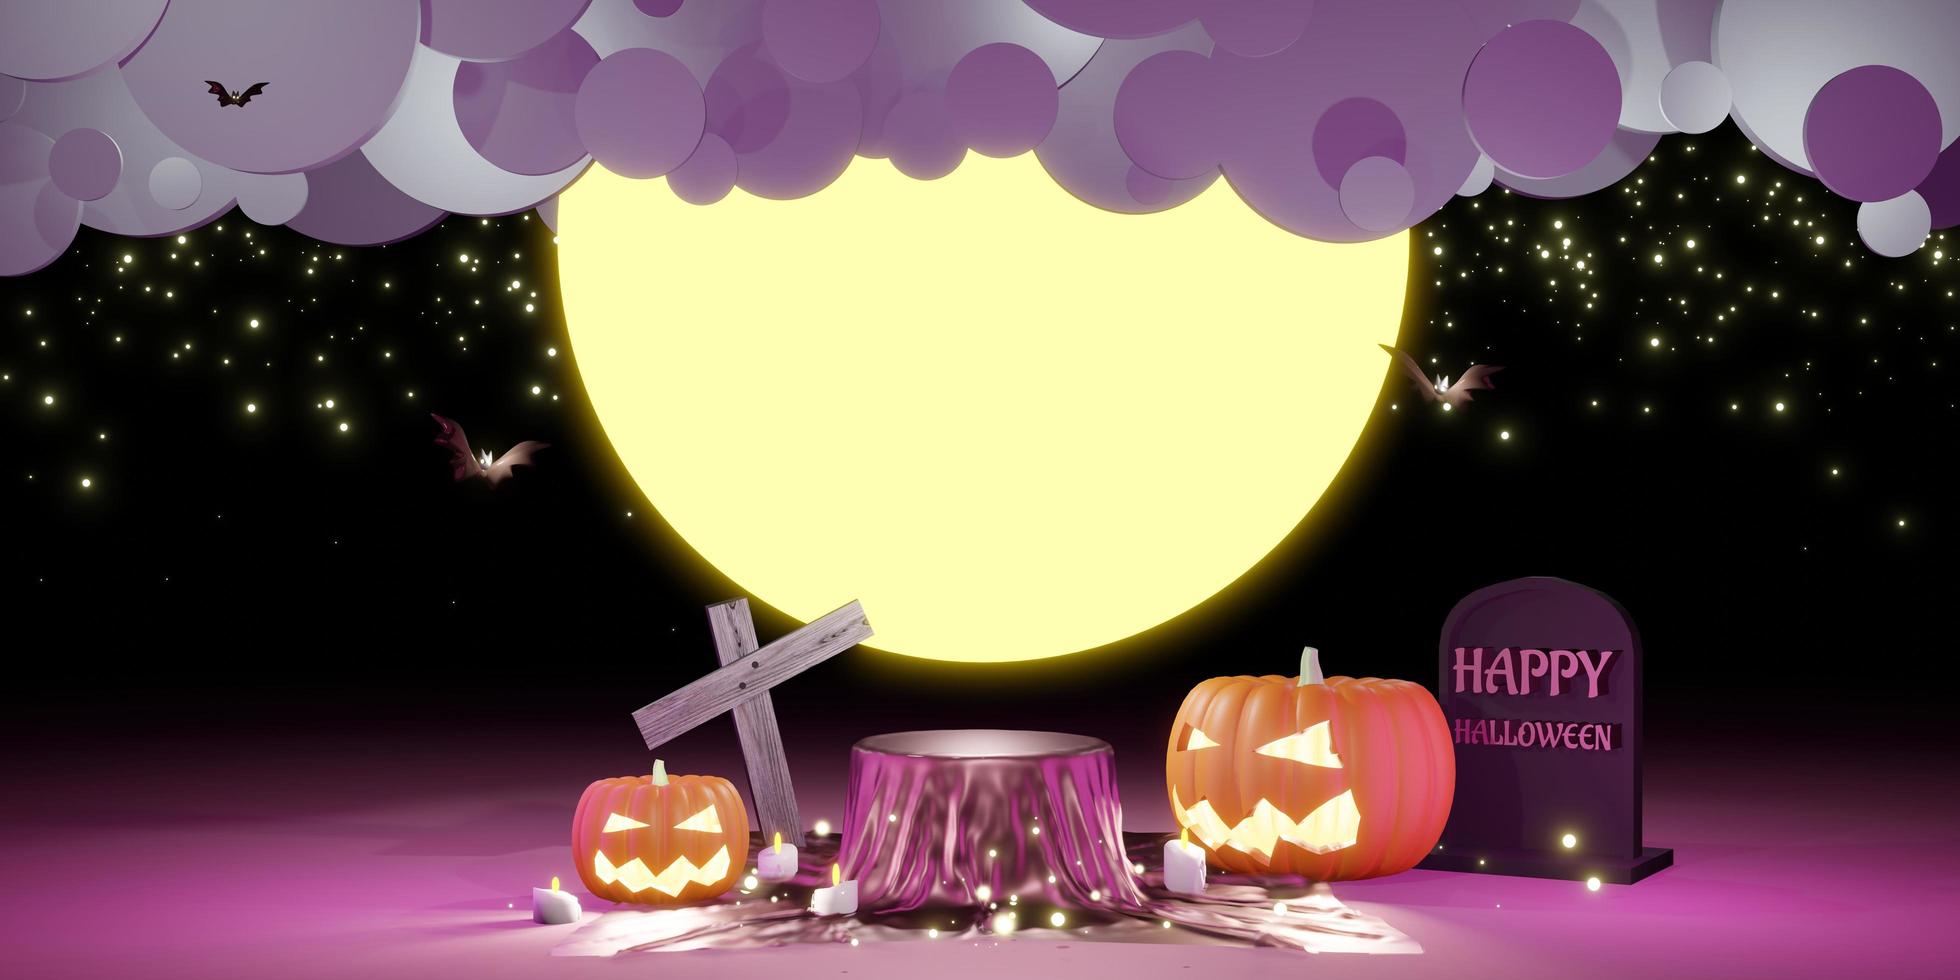 Halloween-avond met glanzende satijnen productpresentatie op een podium foto